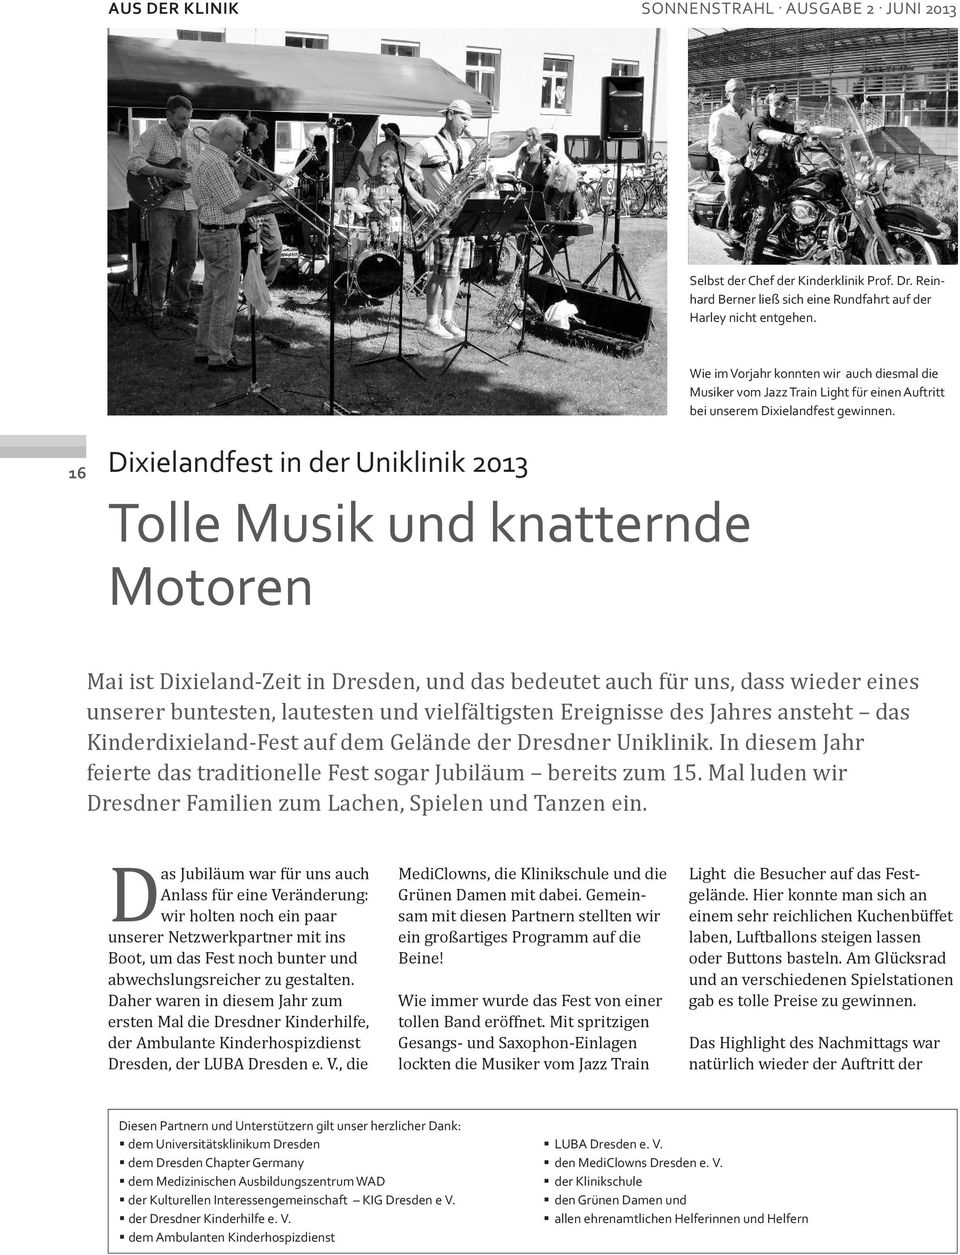 16 Dixielandfest in der uniklinik 2013 tolle Musik und knatternde Motoren Mai ist Dixieland-Zeit in Dresden, und das bedeutet auch für uns, dass wieder eines unserer buntesten, lautesten und